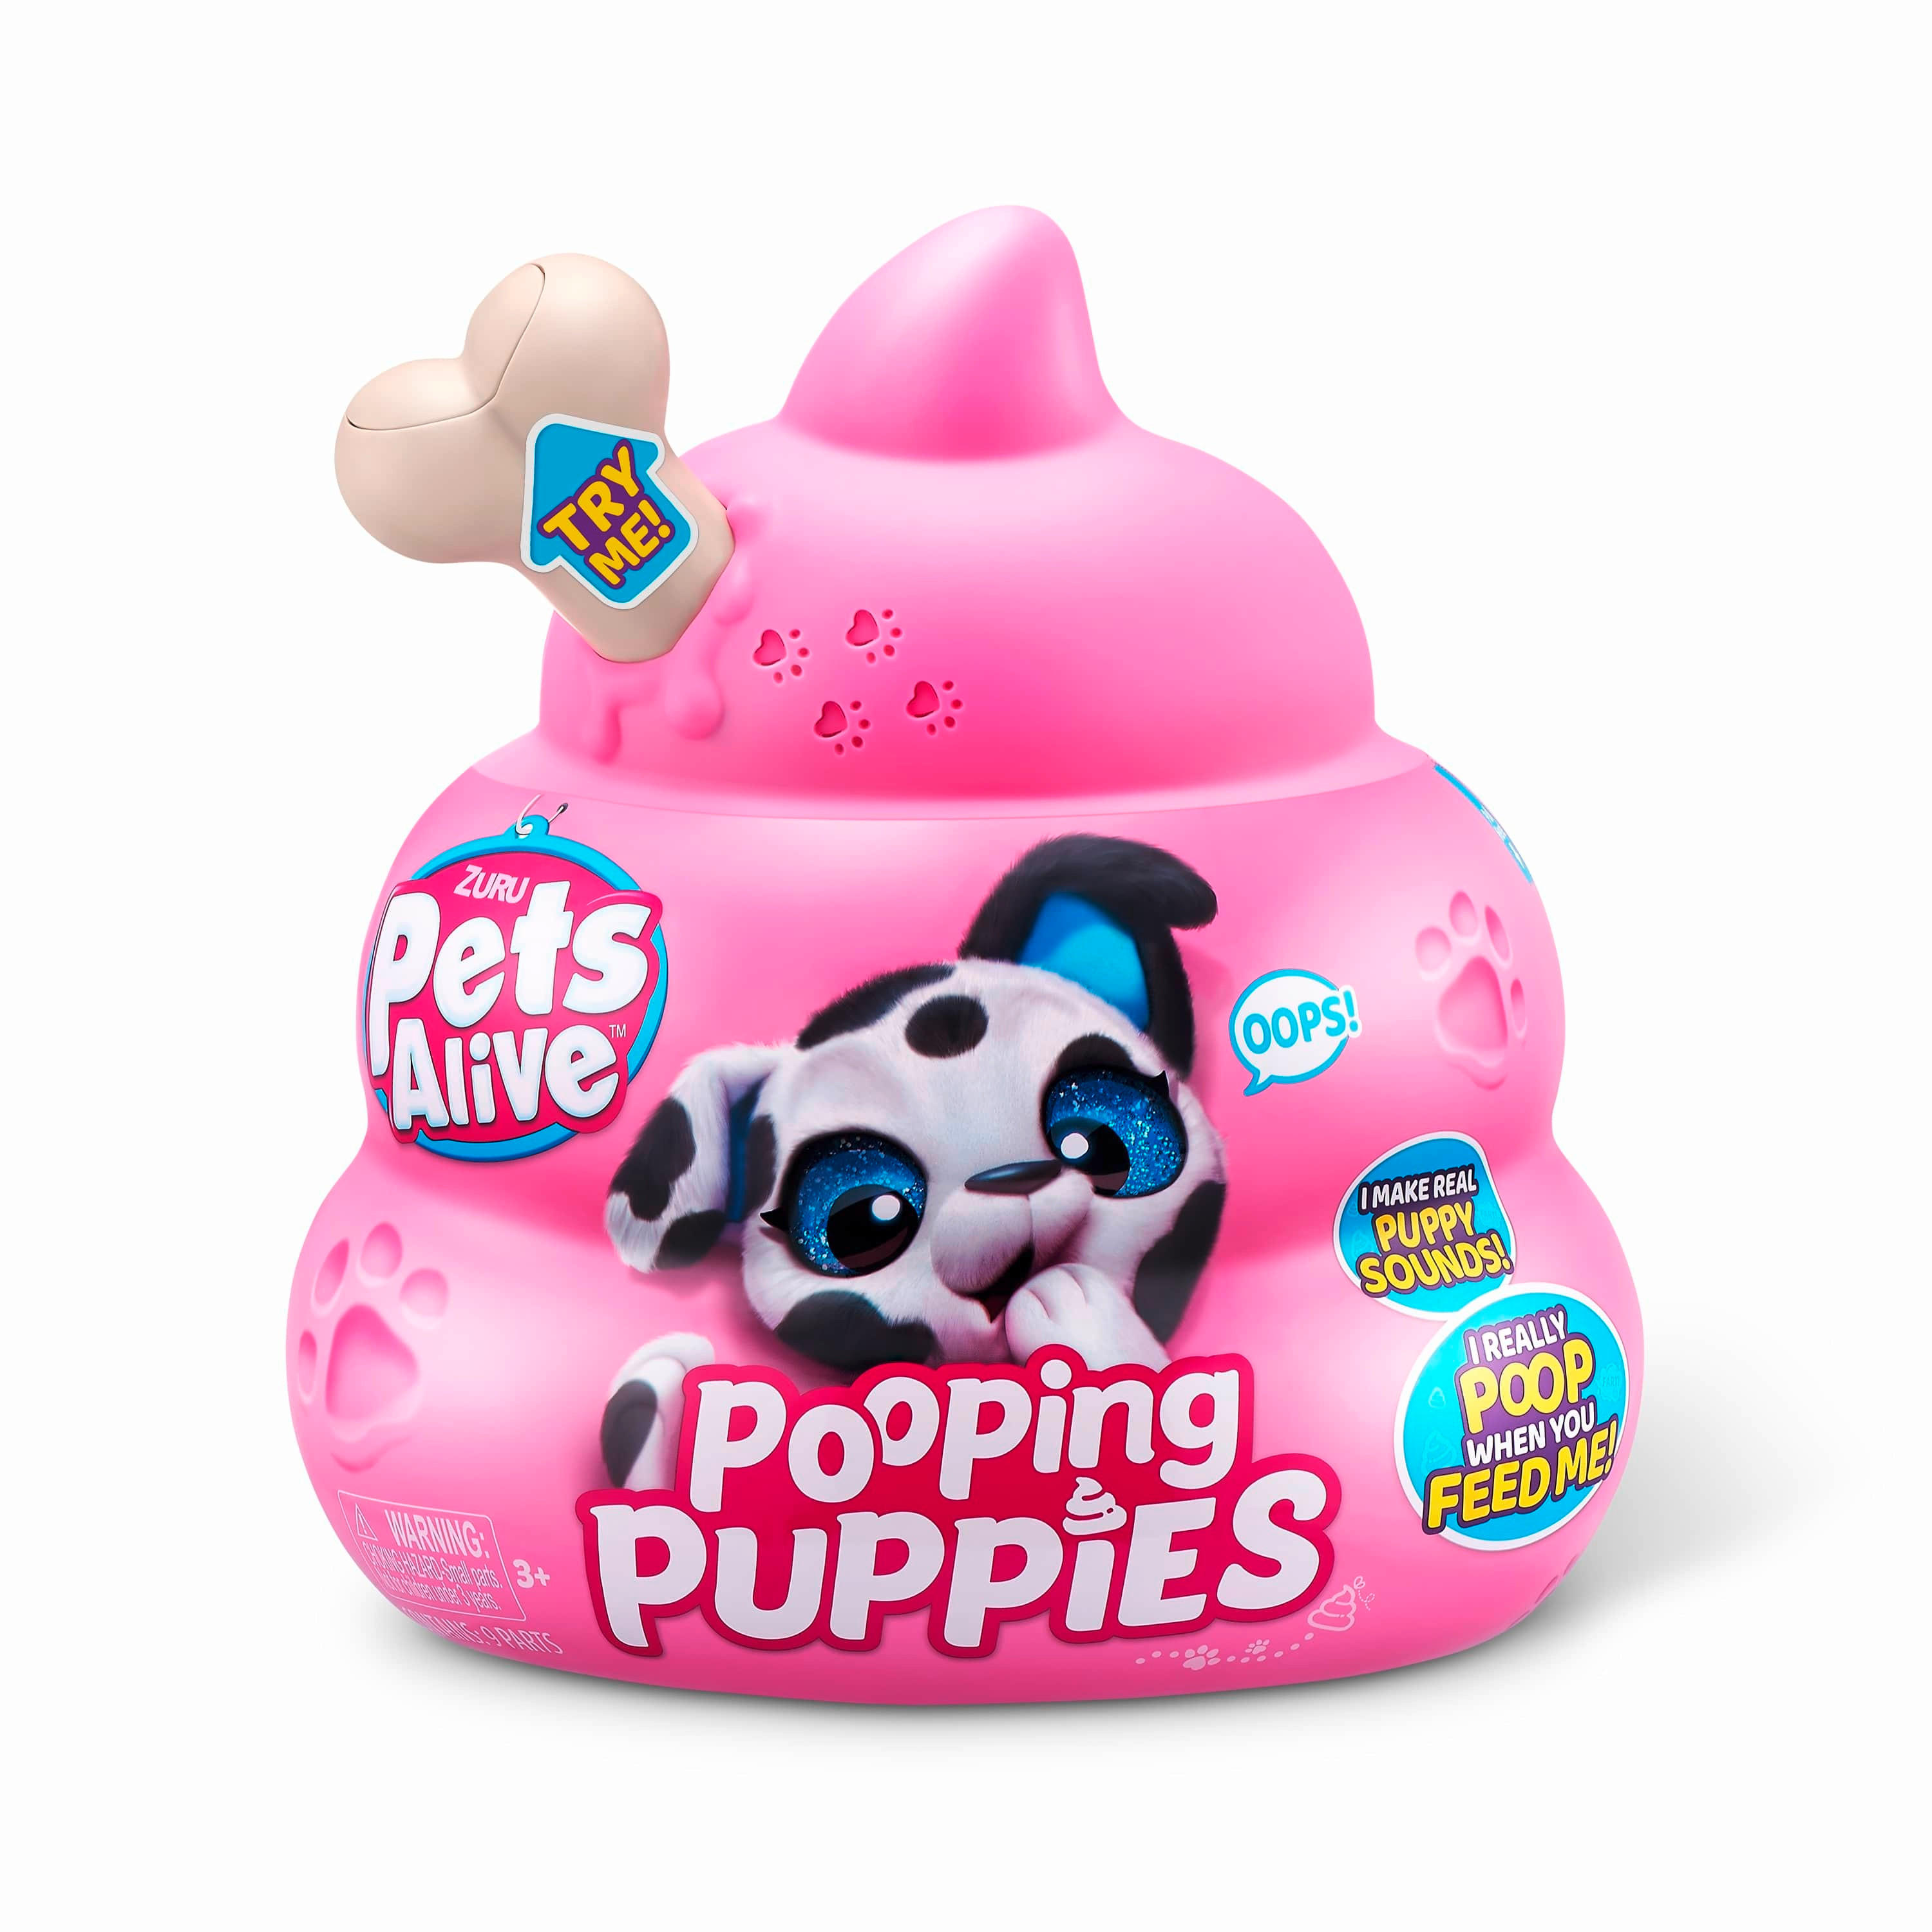 Игрушка zuru pets. Pets Alive игрушка pooping. Pooping Puppies игрушка. Zuru Pets Alive. Игрушка Zuru Pets Alive my Magical Unicorn.